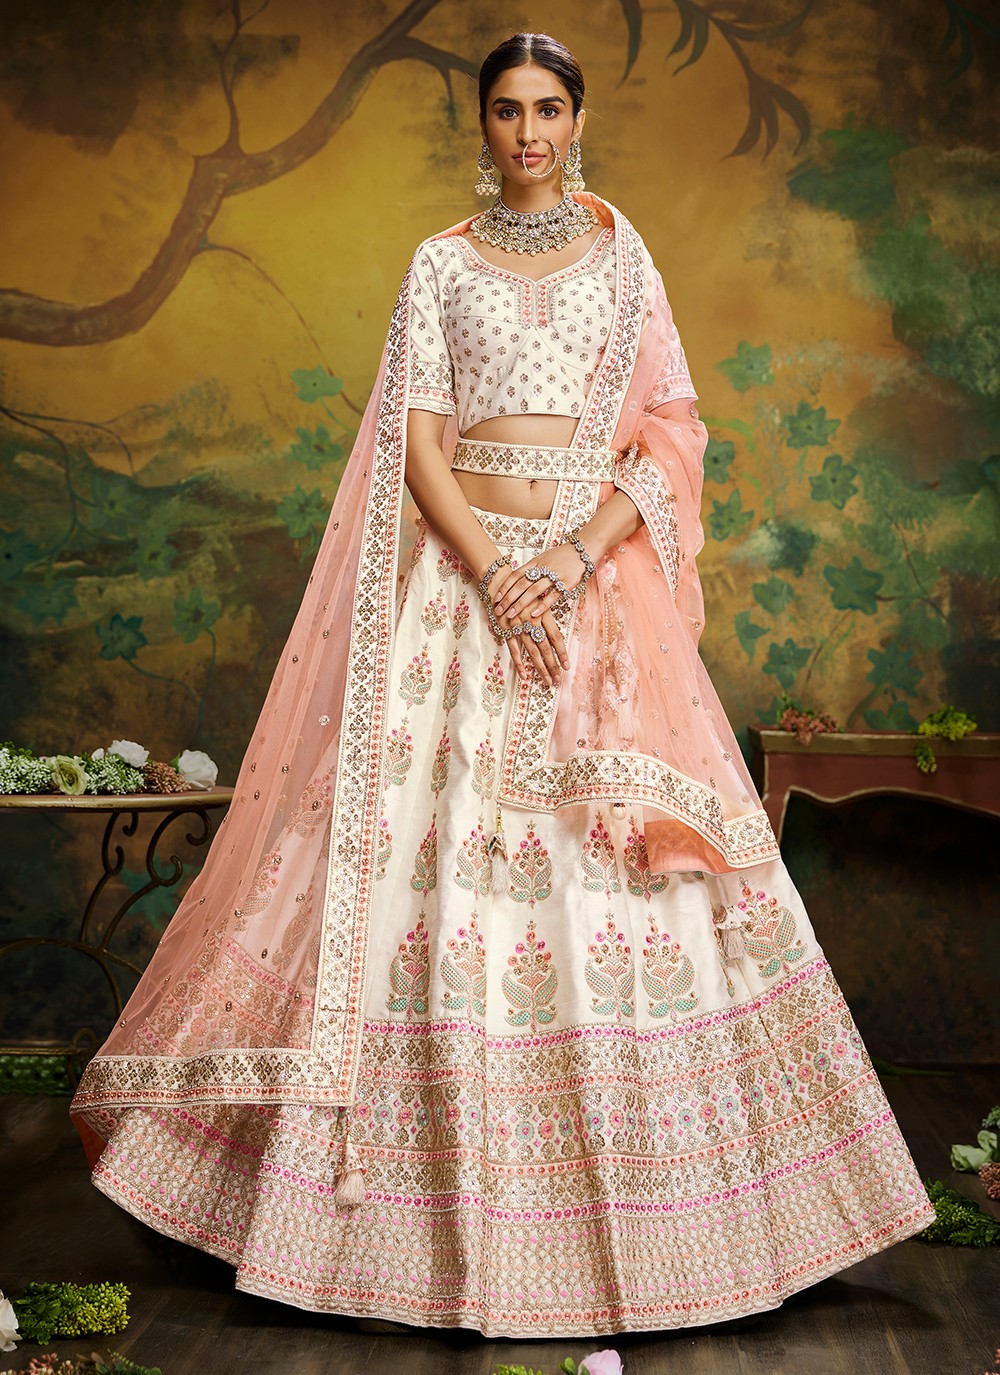 Creative White Designer Indo-Western Lehenga Choli for Wedding and Sangeet